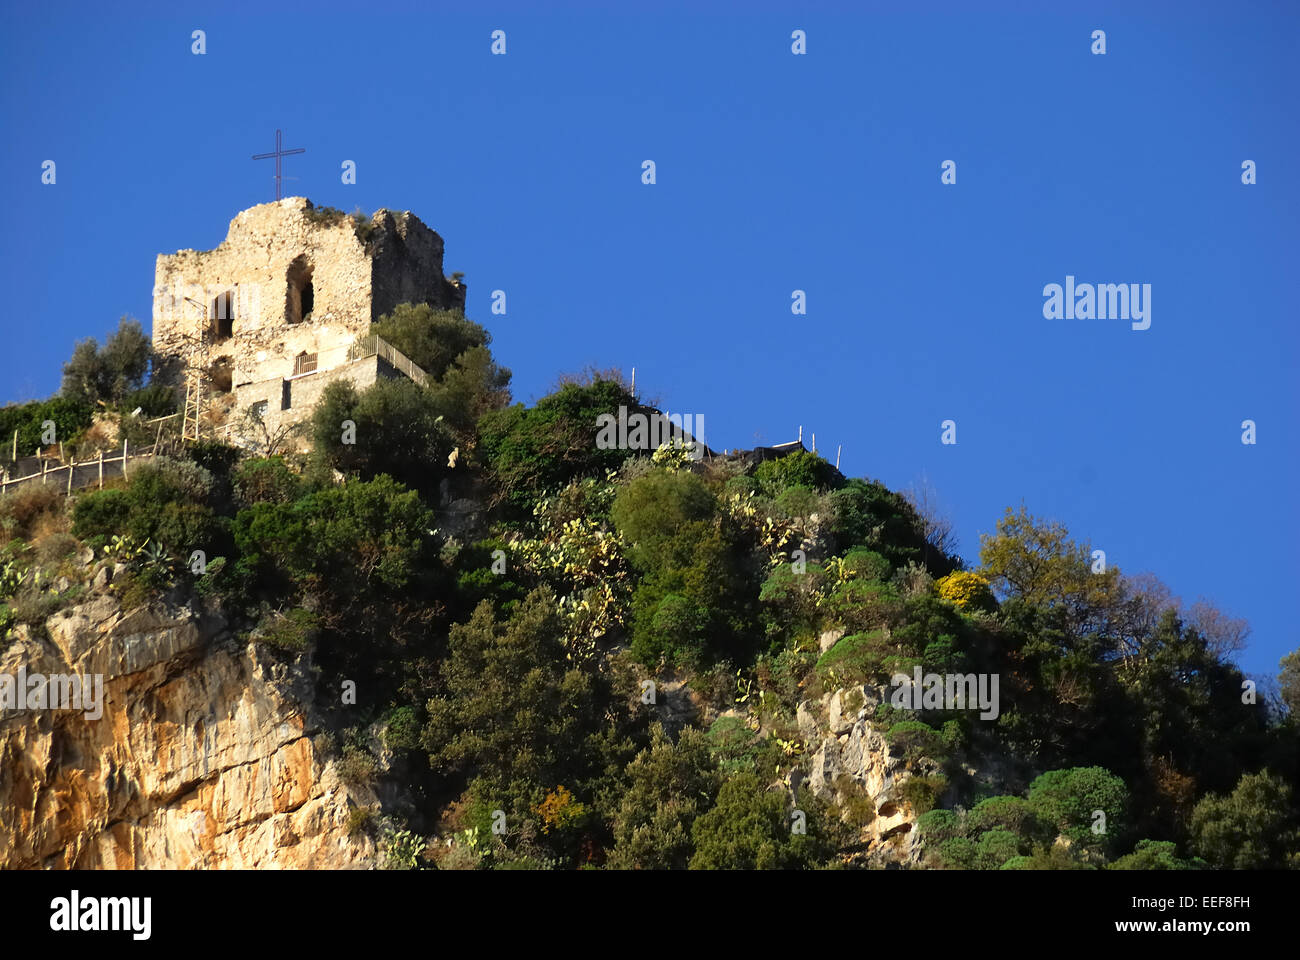 Amalfi, Campanie, Italie. Une ancienne petite église. Amalfi est une ville touristique sur la côte amalfitaine est connue dans le monde entier. Banque D'Images